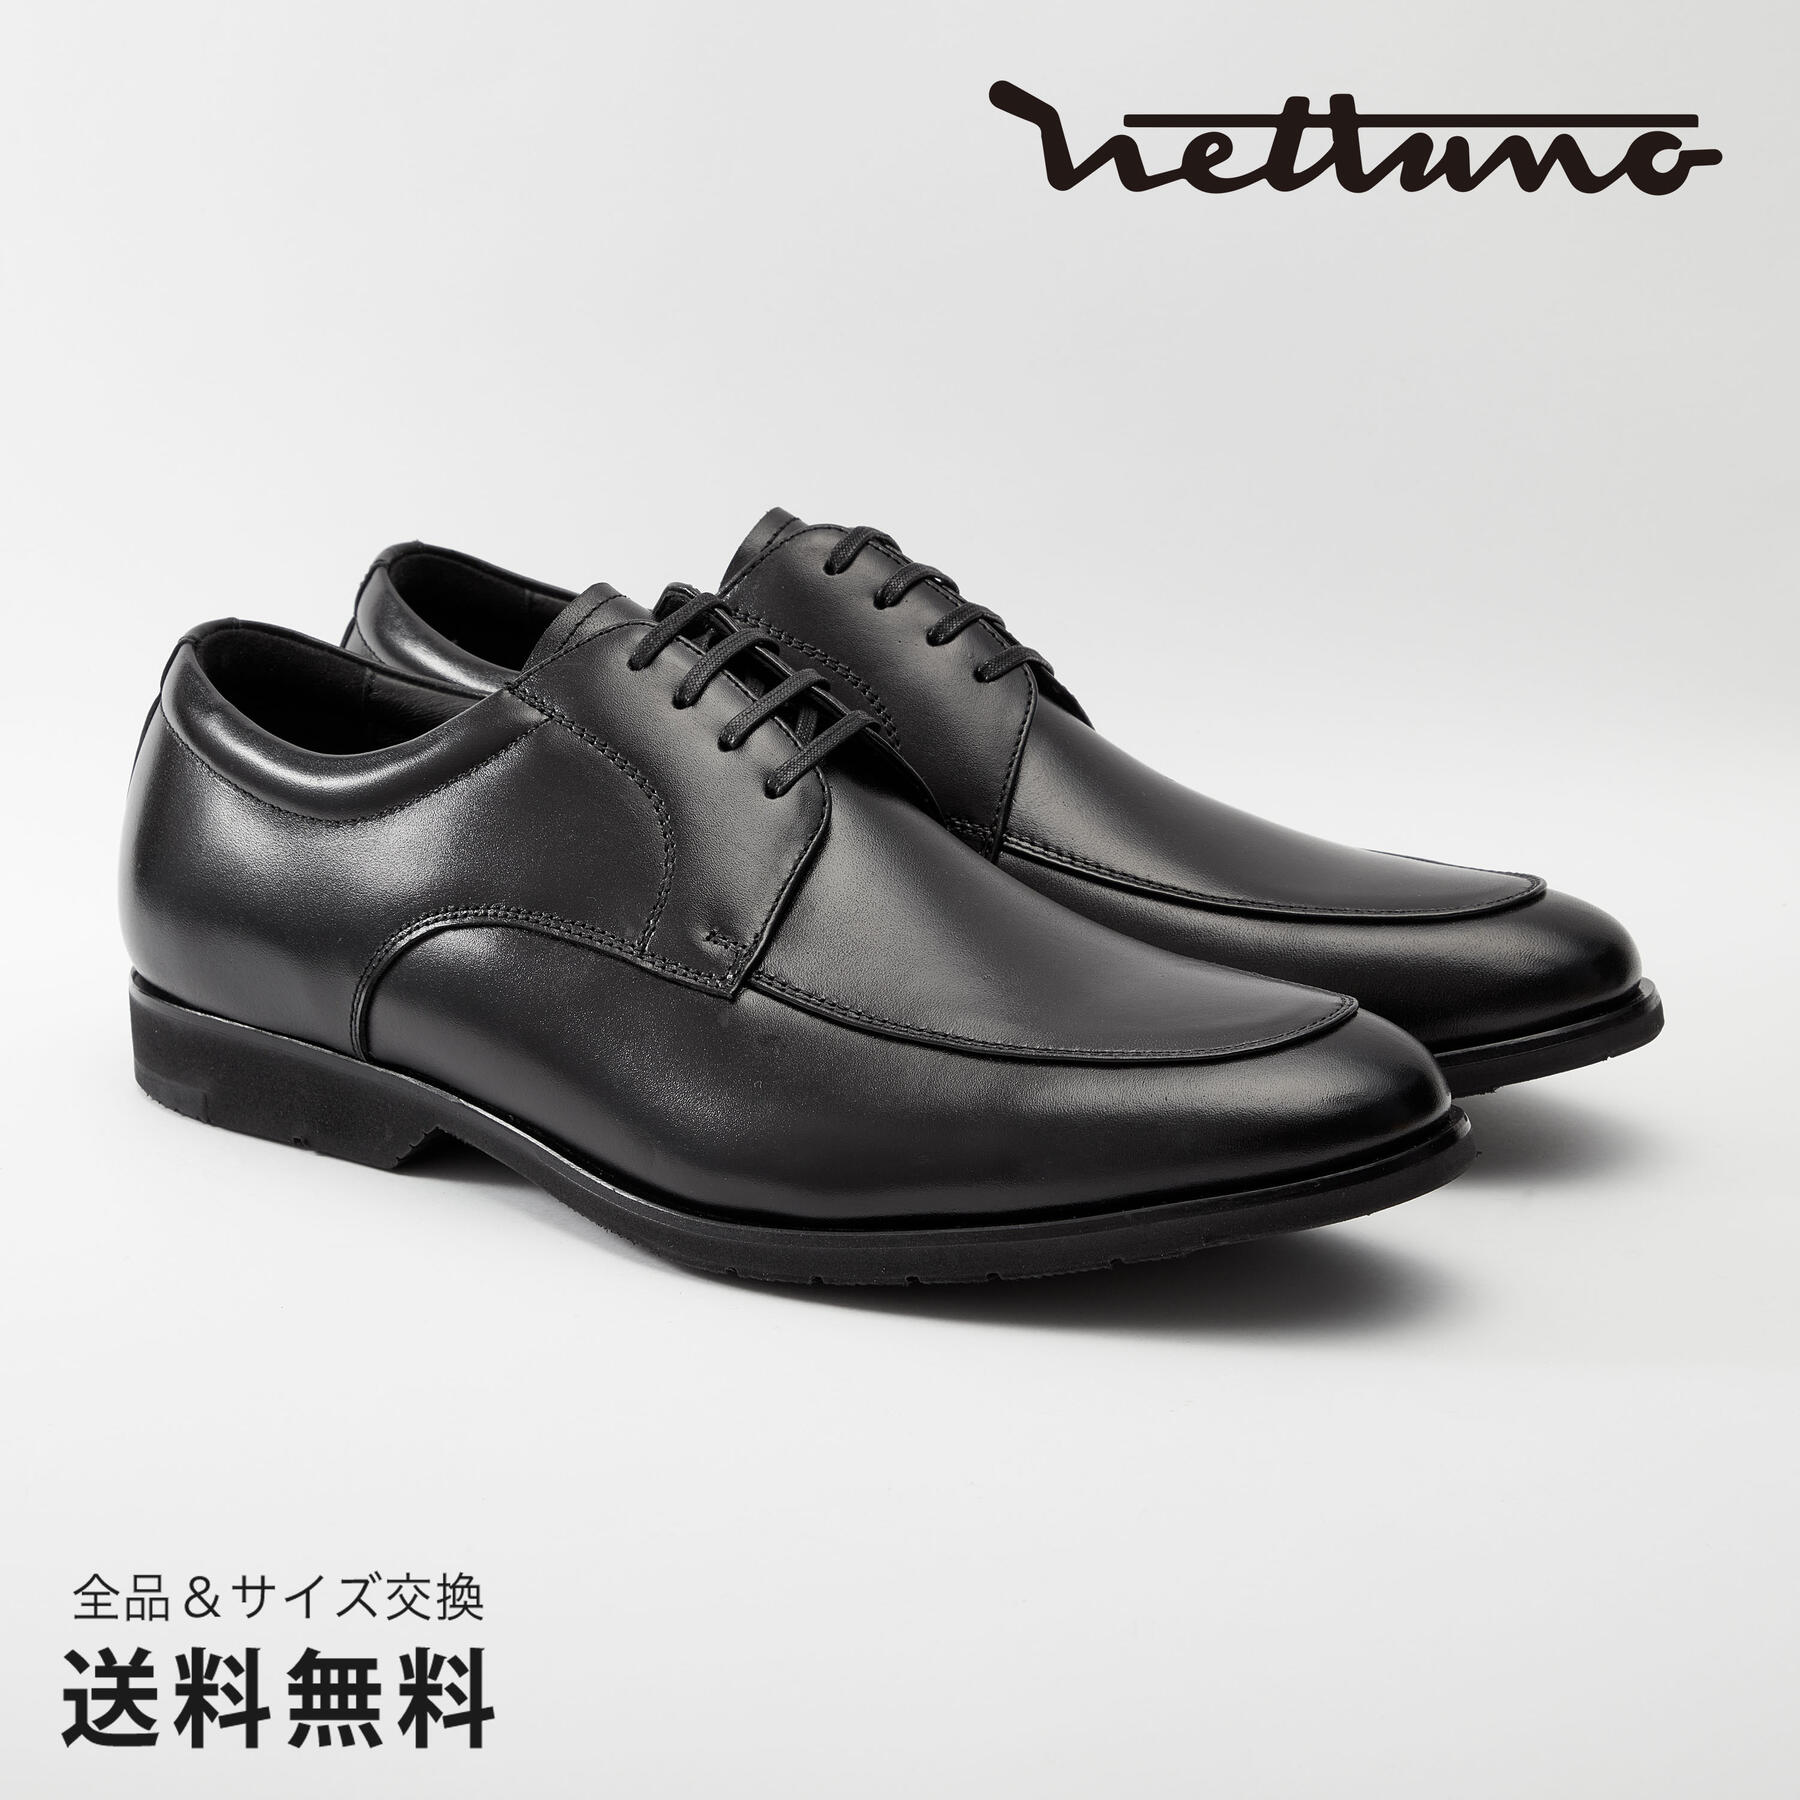 NETTUNO ネッツーノ 外羽根Uチップ 4E 革靴 防水キップレザー ラバーソール ブラック セメンテッド 黒 BLACK 64617 日本 靴 メンズ靴 ビジネスシューズ サイズ 23.5 - 27.5cm 